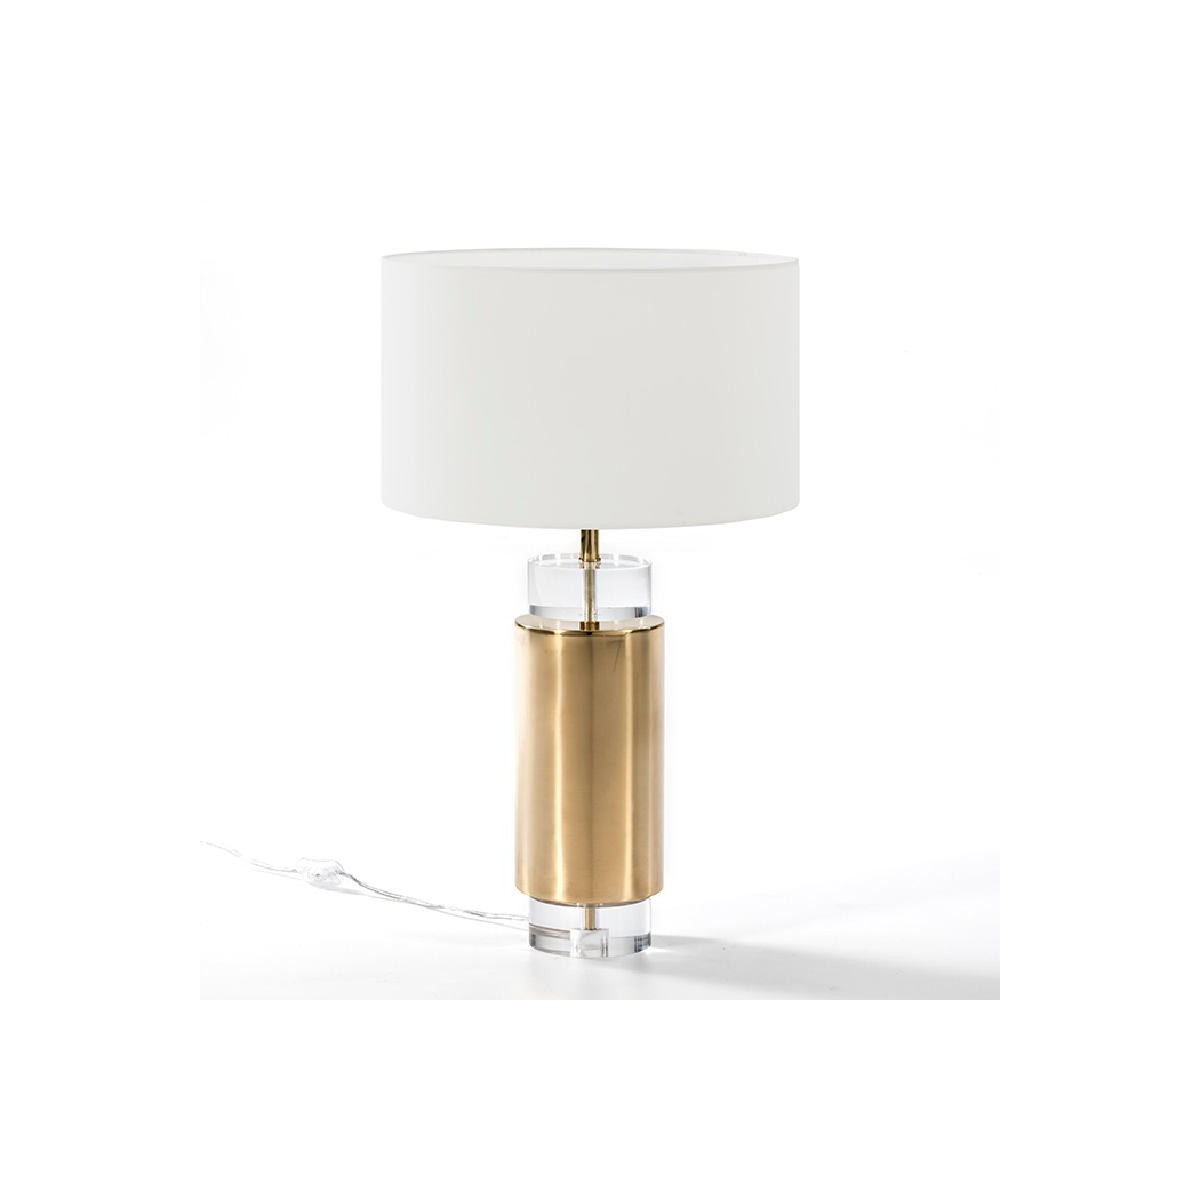 14X53 Golden Acryl/Metall Story Lampe 8099 - Tisch AMP Auf Bildschirm Ohne